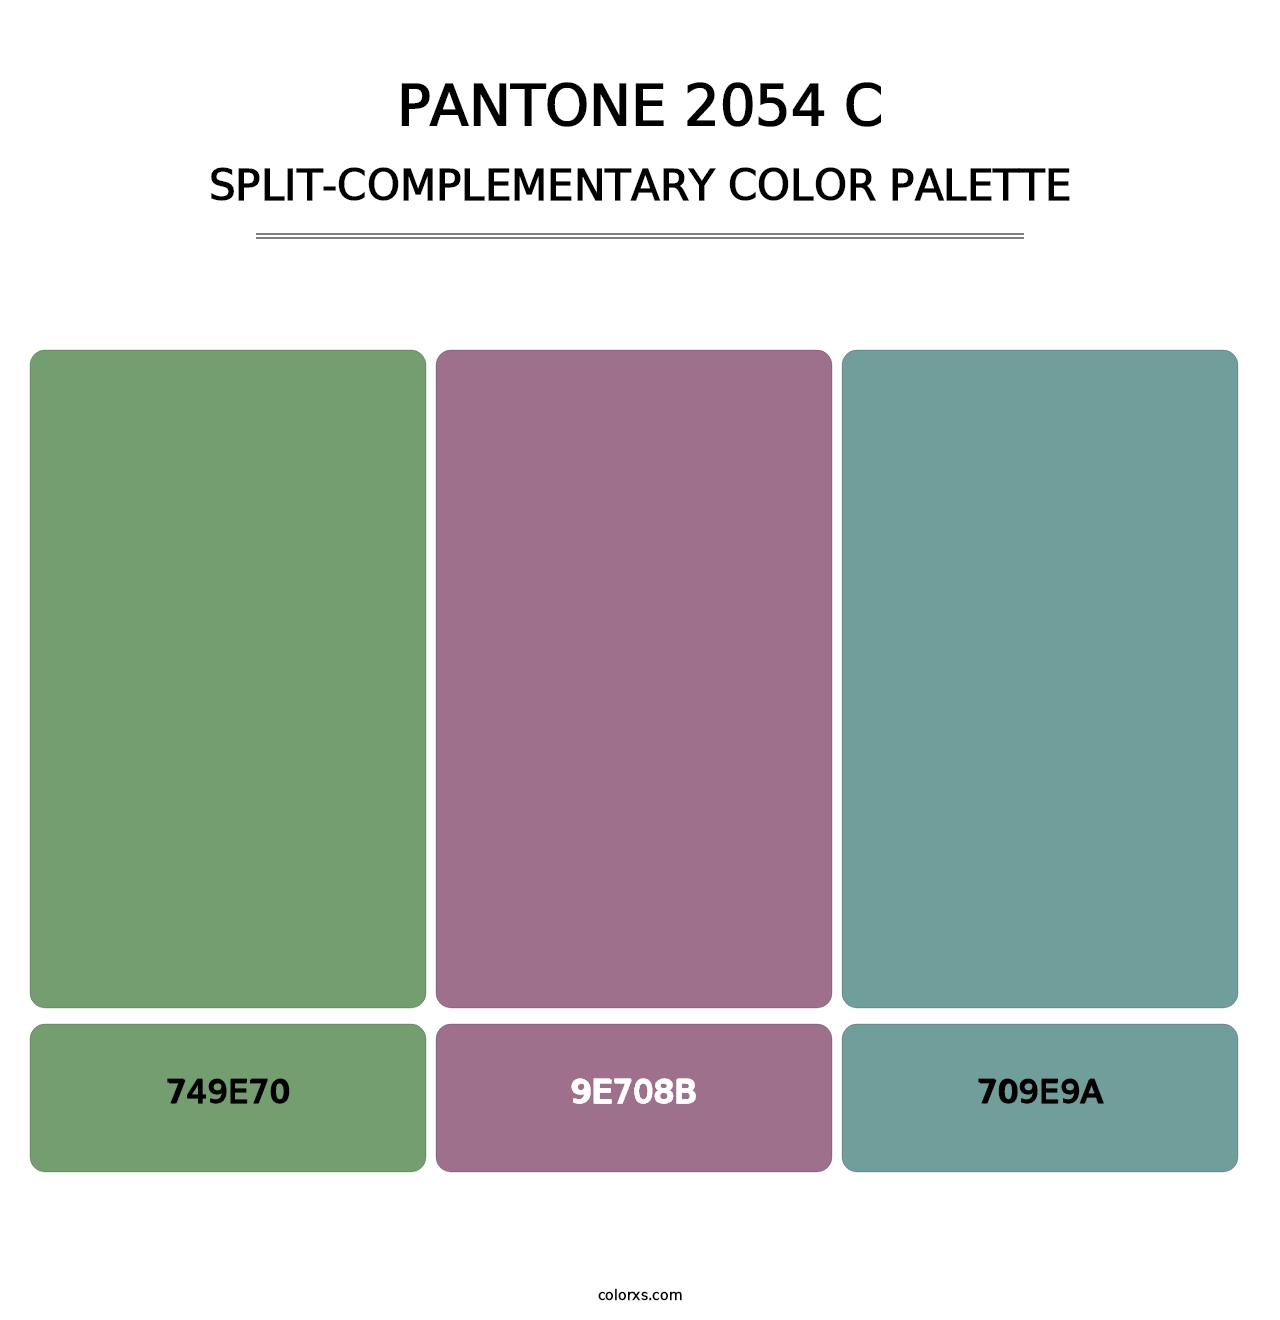 PANTONE 2054 C - Split-Complementary Color Palette